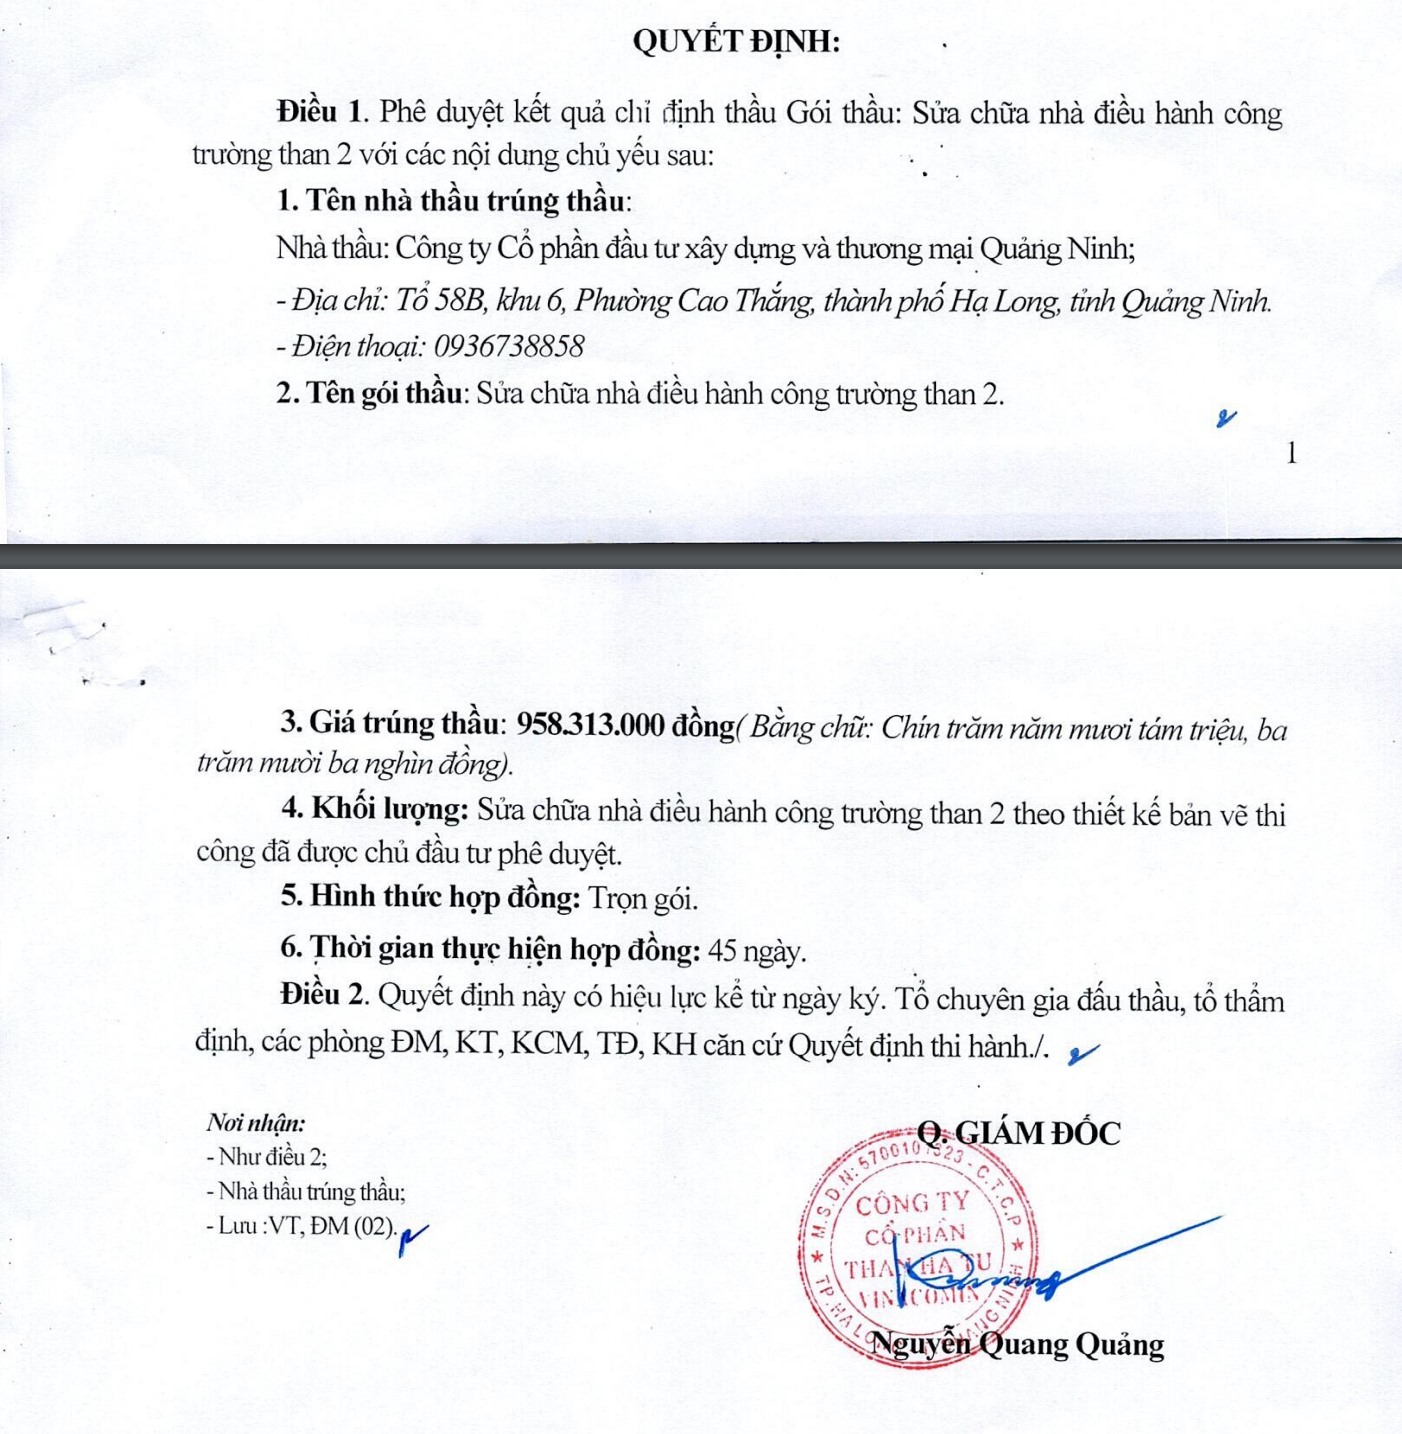 Quyết định phê duyệt kết quả chỉ định thầu của Than Hà Tu với Công ty Thương mại Quảng Ninh. Ảnh: Chụp màn hình